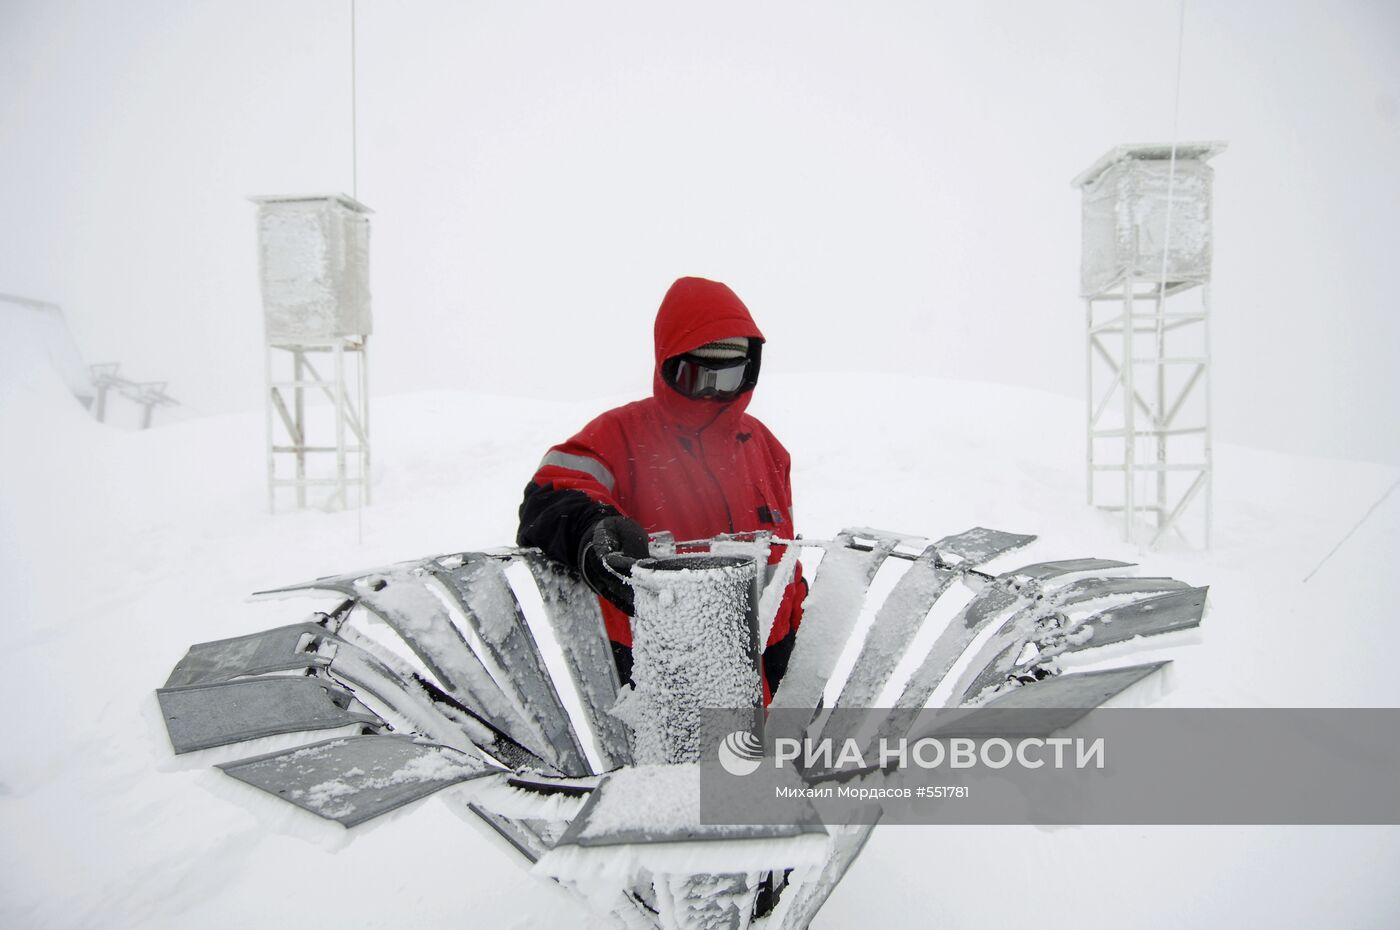 Работа метеостанции "Аибга" на территории Сочи и Красной Поляны